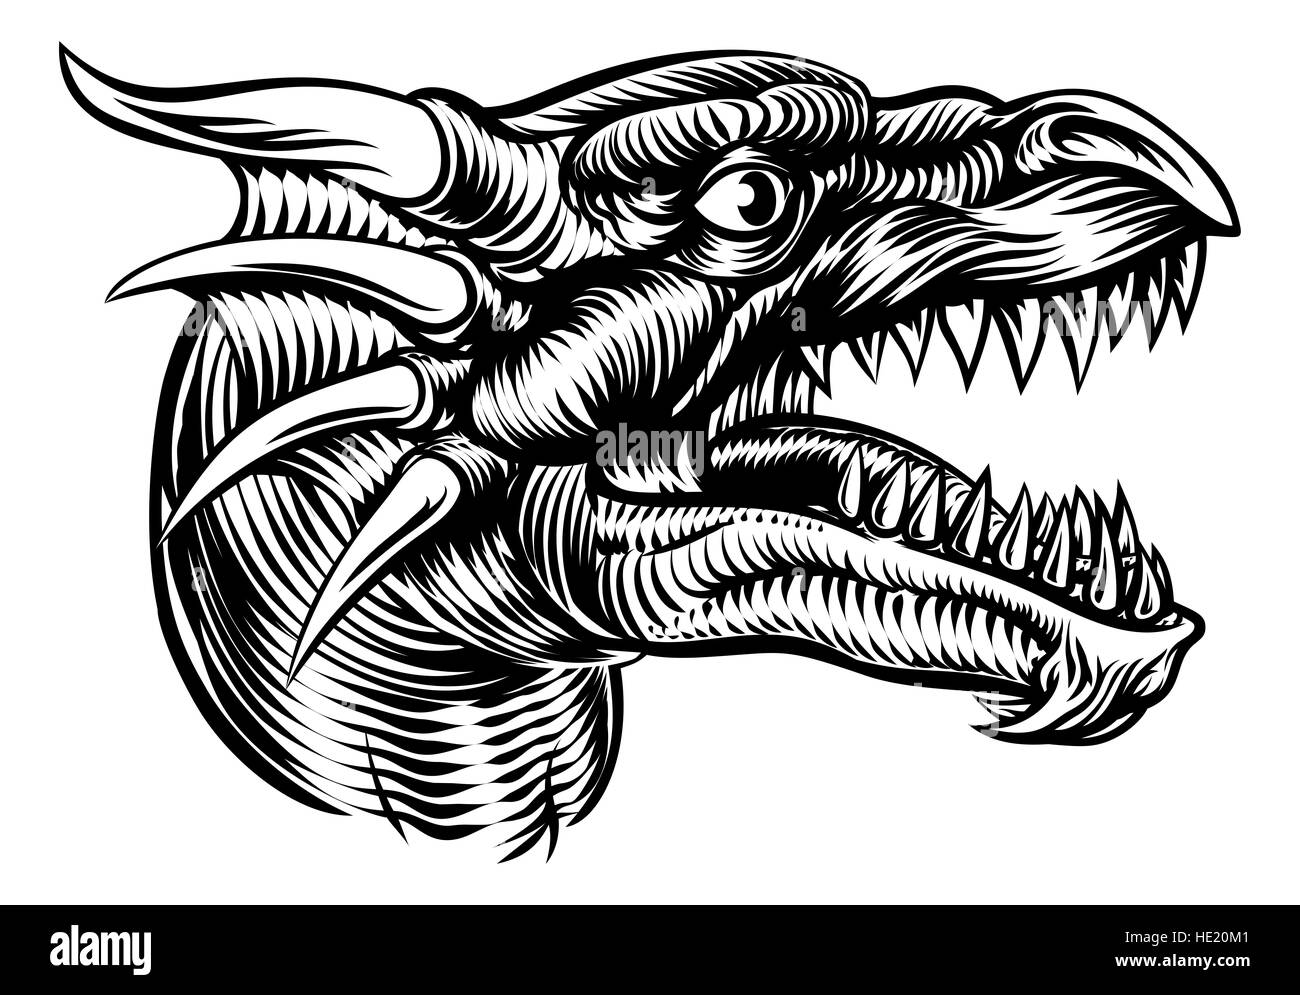 Illustration originale d'un monstre tête de dragon dans un style vintage retro gravure sur bois Banque D'Images